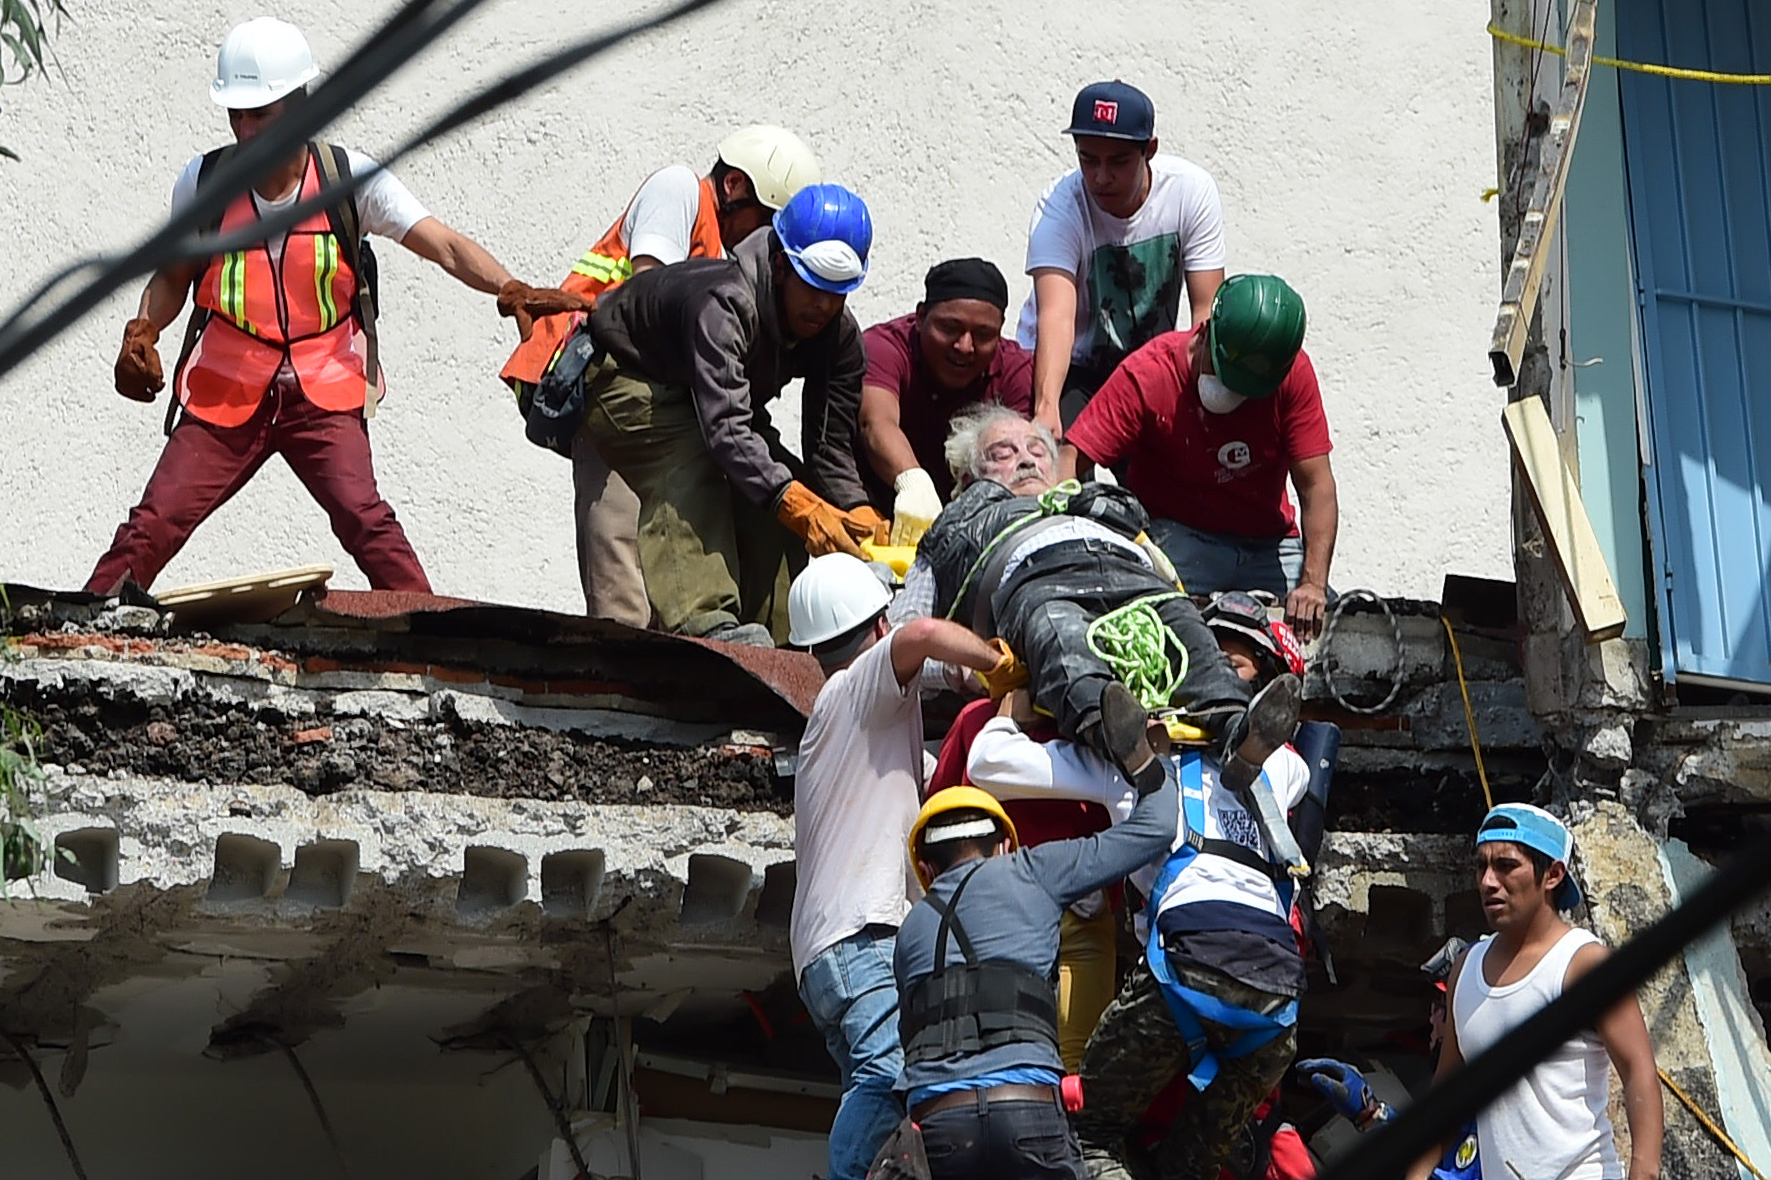 Спасательные работы при землетрясении. Землетрясение в Мексике 2017 год 19 сентября. Спасатели спасают людей из под завалов. Спасательные работы из под завалов.